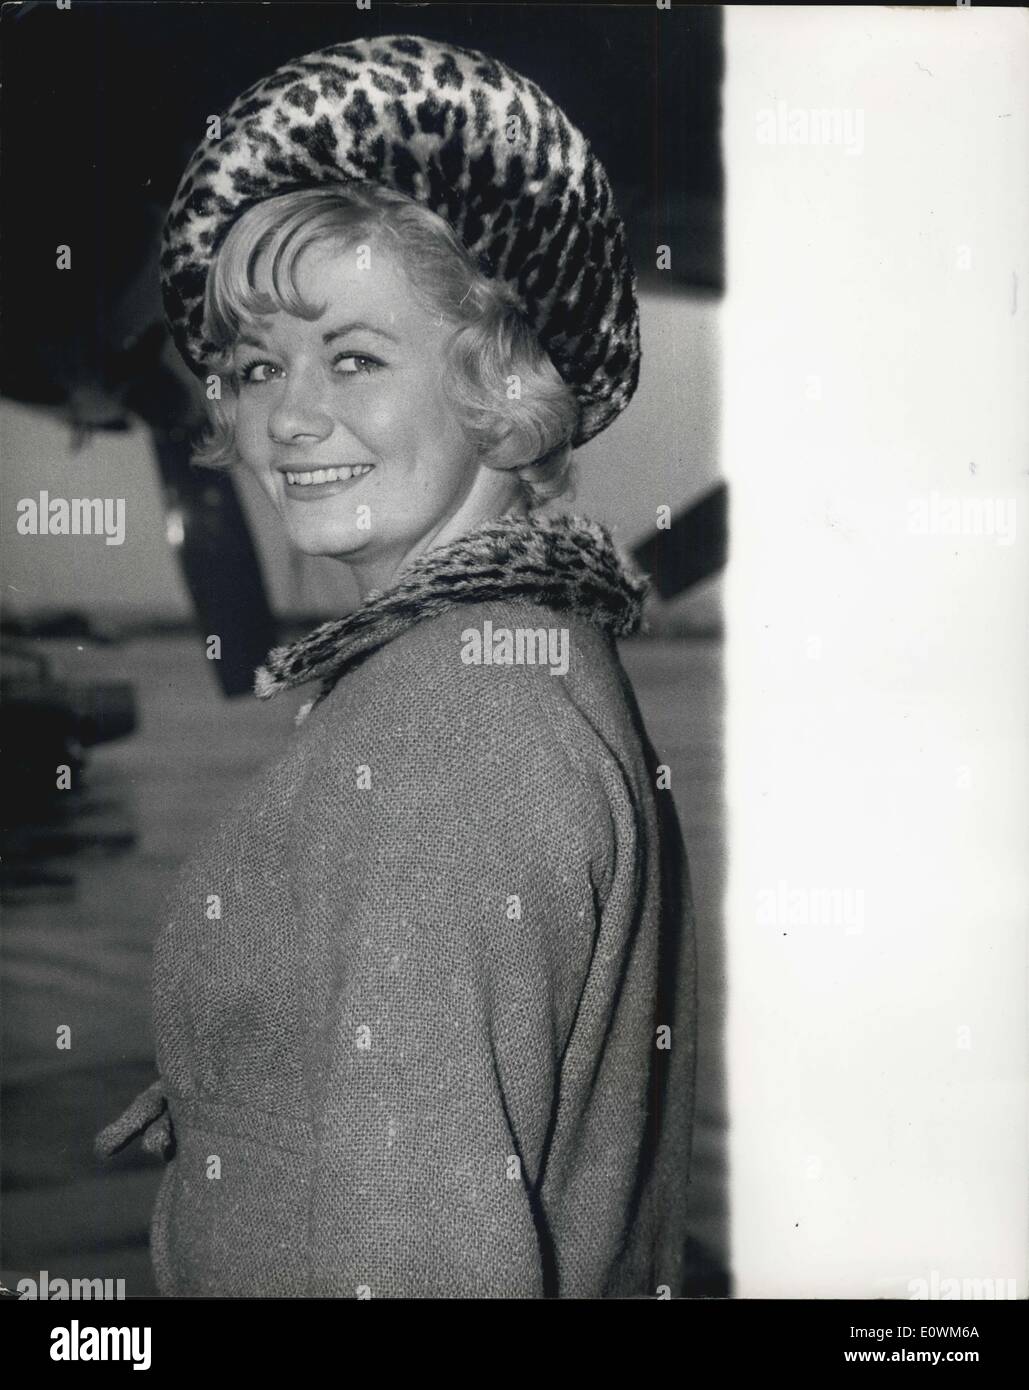 Septembre 02, 1963 - Miss Grande-bretagne vient à Londres : amener un sourire ensoleillé en pluie Londres hier, c'était le nouveau 'Miss France' Gillian Taylor qui ont participé à de Glassgow. Gillian pempo de Stockport, Cheshire. Banque D'Images